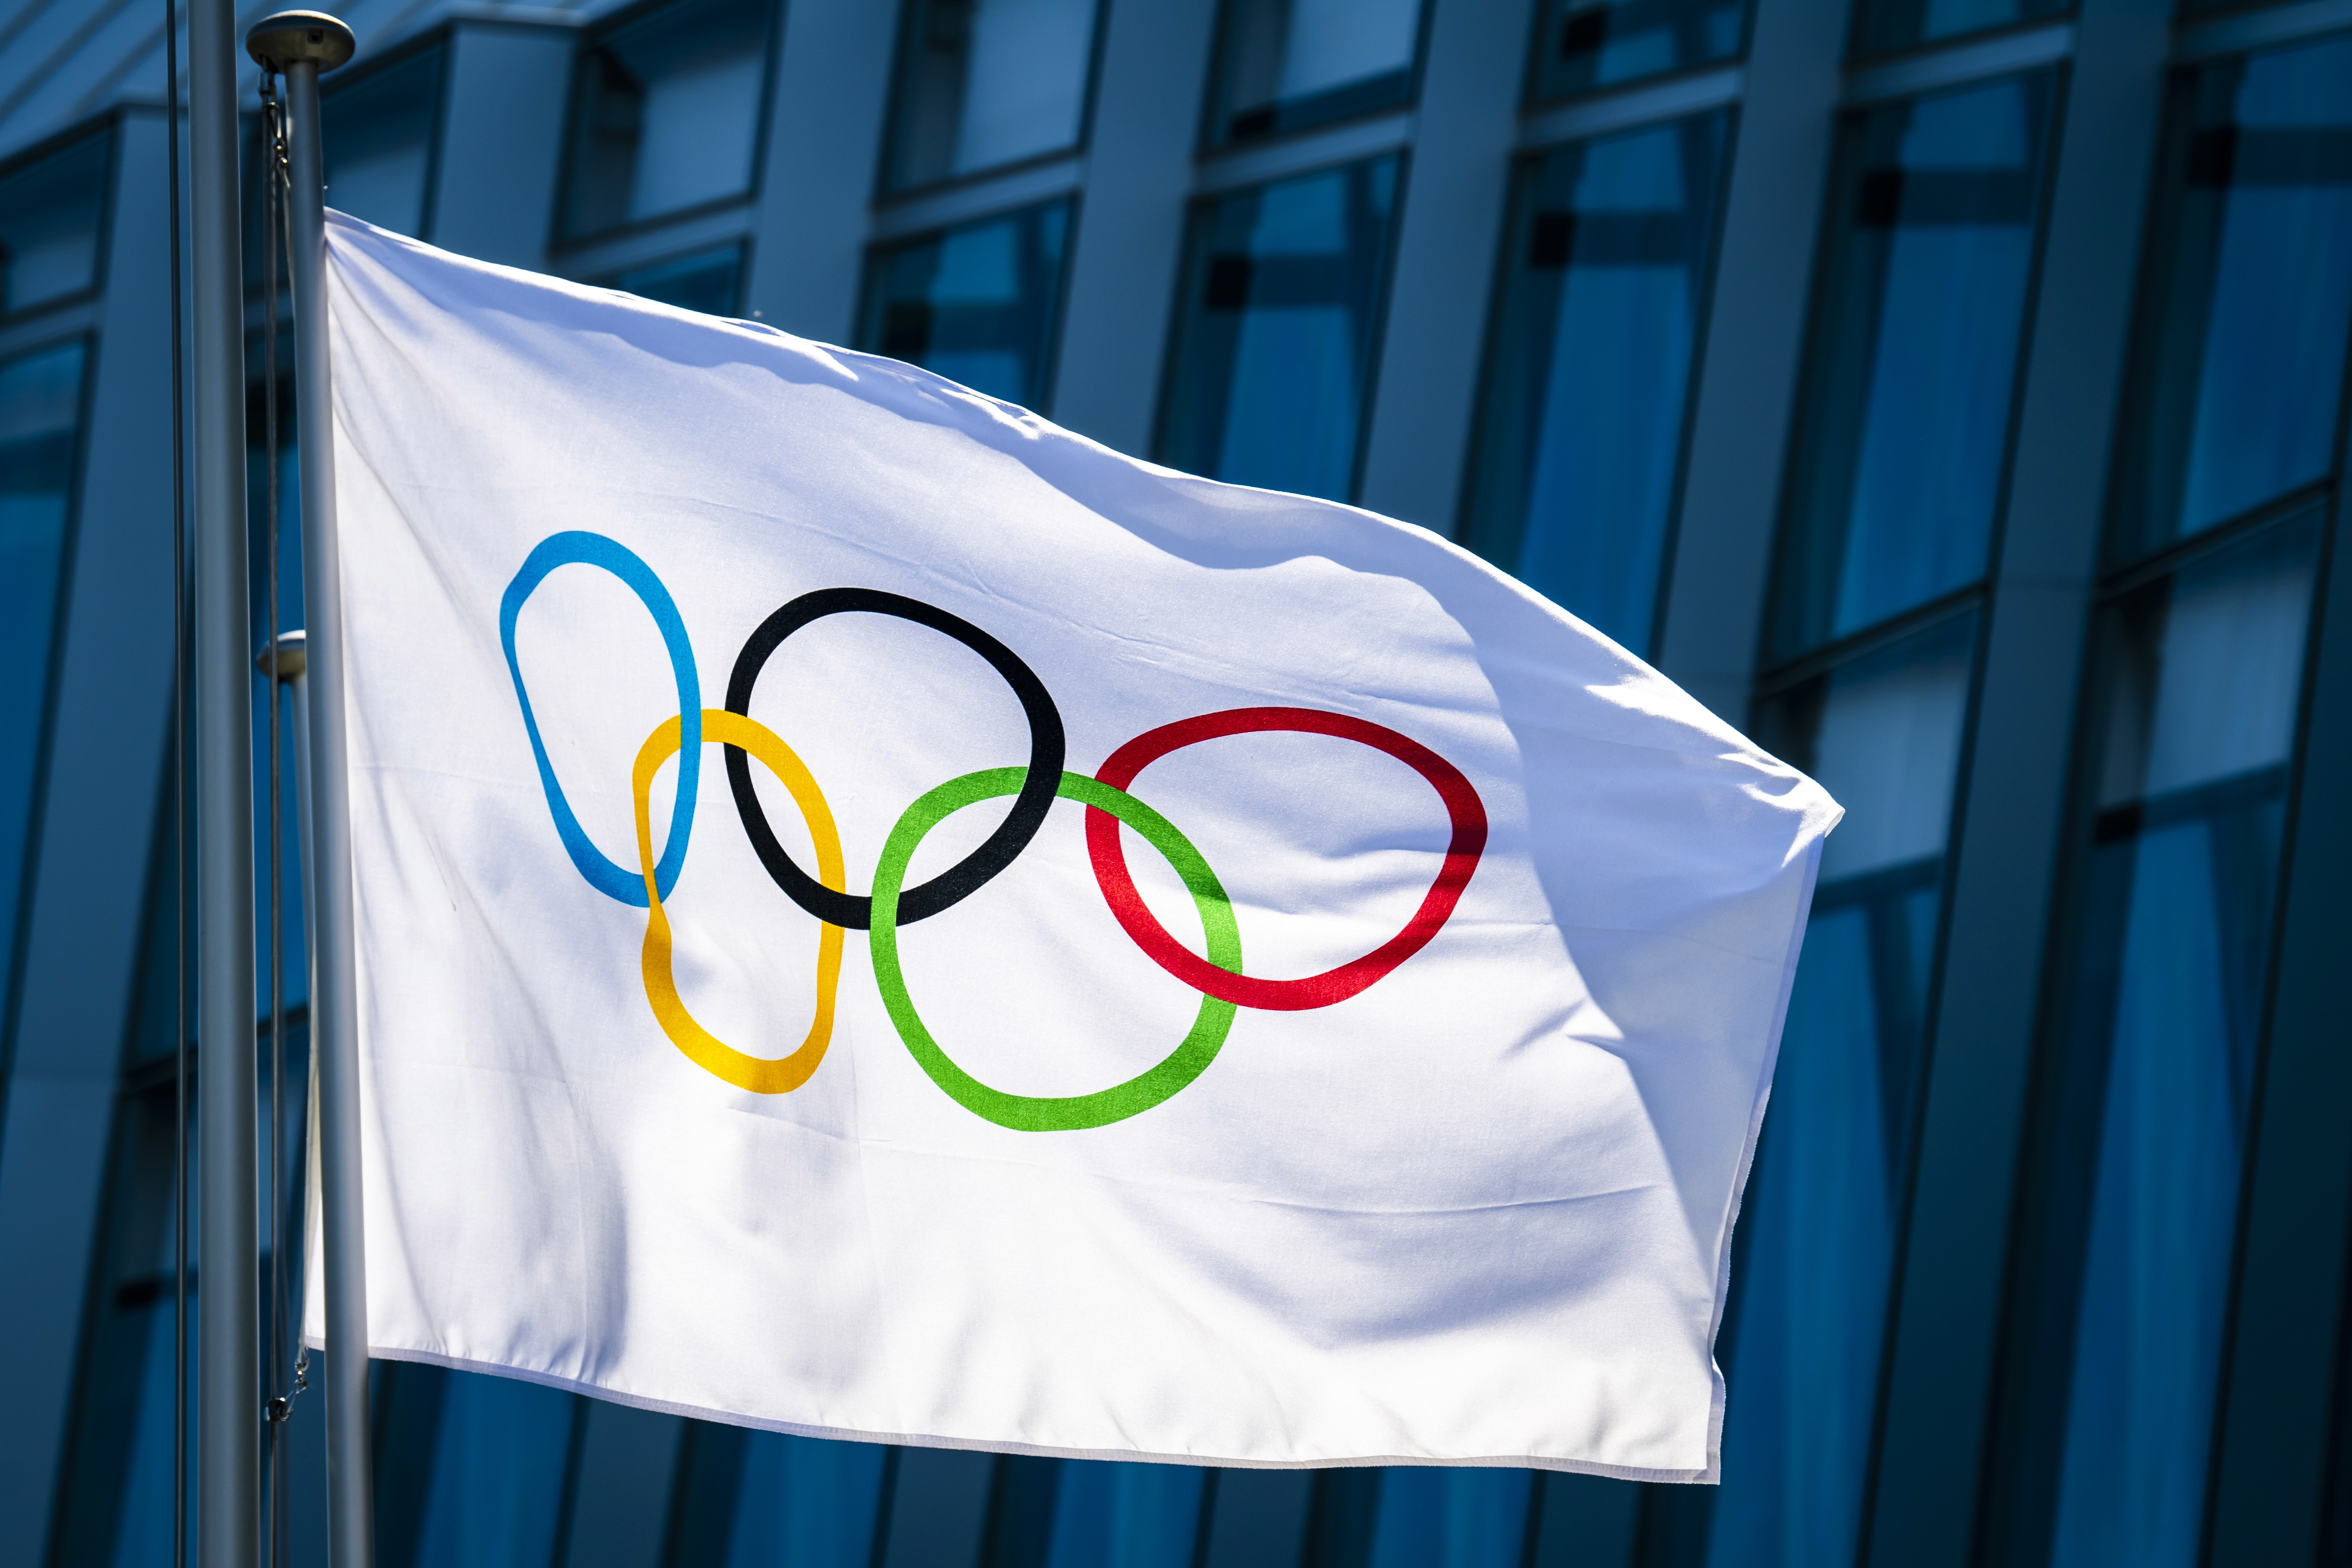 La bandera olímpica ondea ante la sede del Comité Olímpico Internacional en Lausanne, Suiza. EFE/EPA/JEAN-CHRISTOPHE BOTT/Archivo
